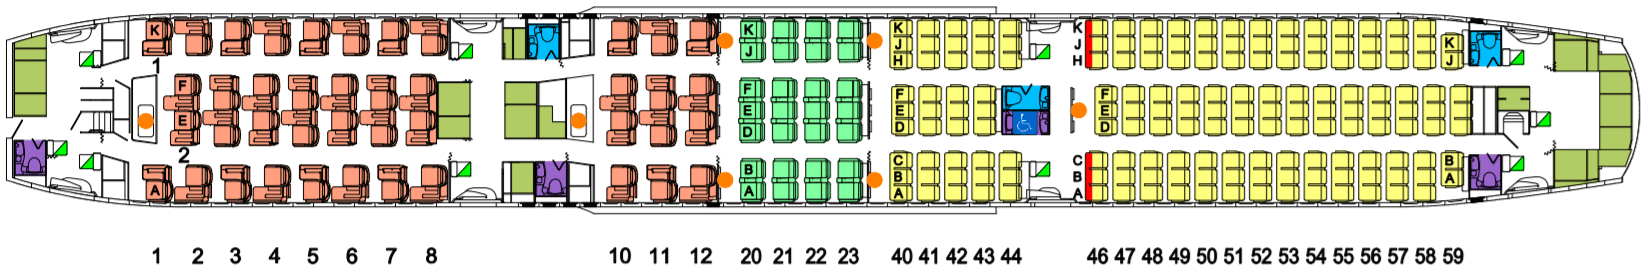 Qantas B787 Seat Map